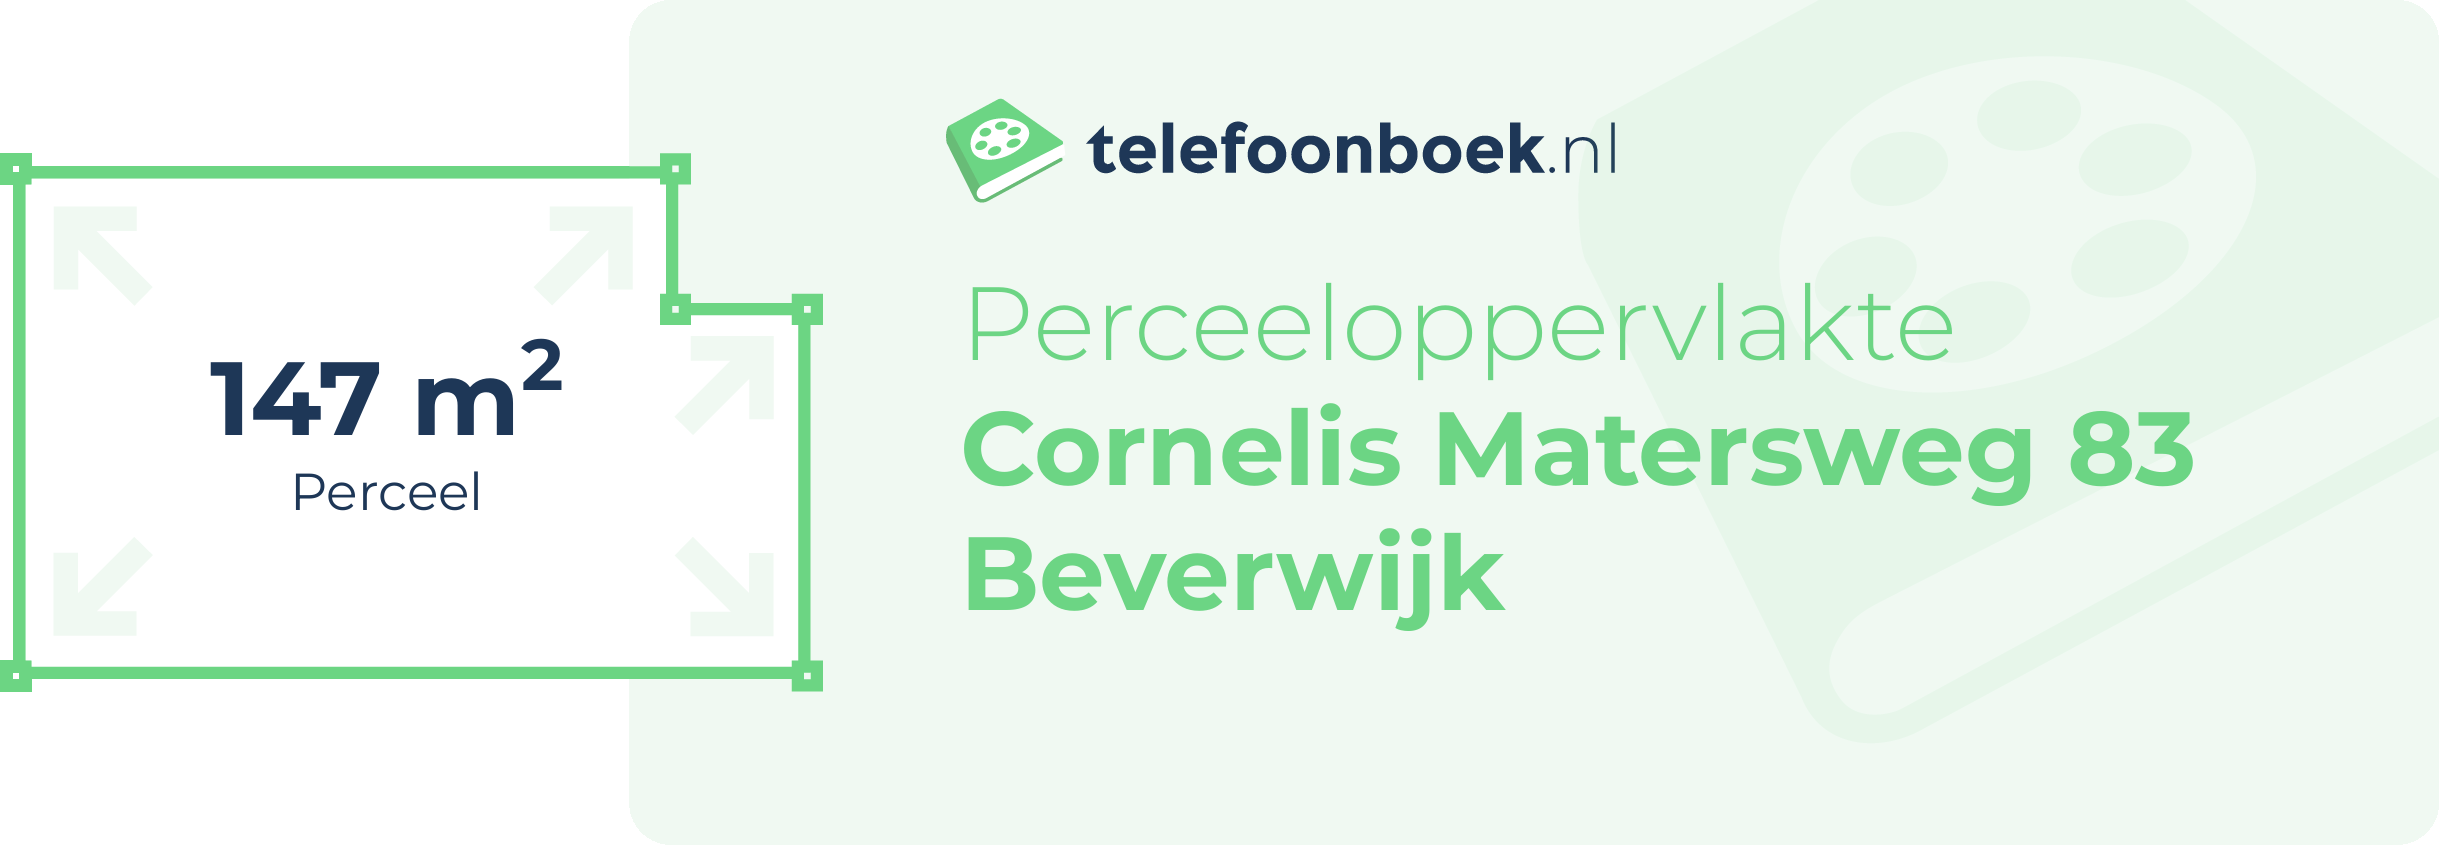 Perceeloppervlakte Cornelis Matersweg 83 Beverwijk